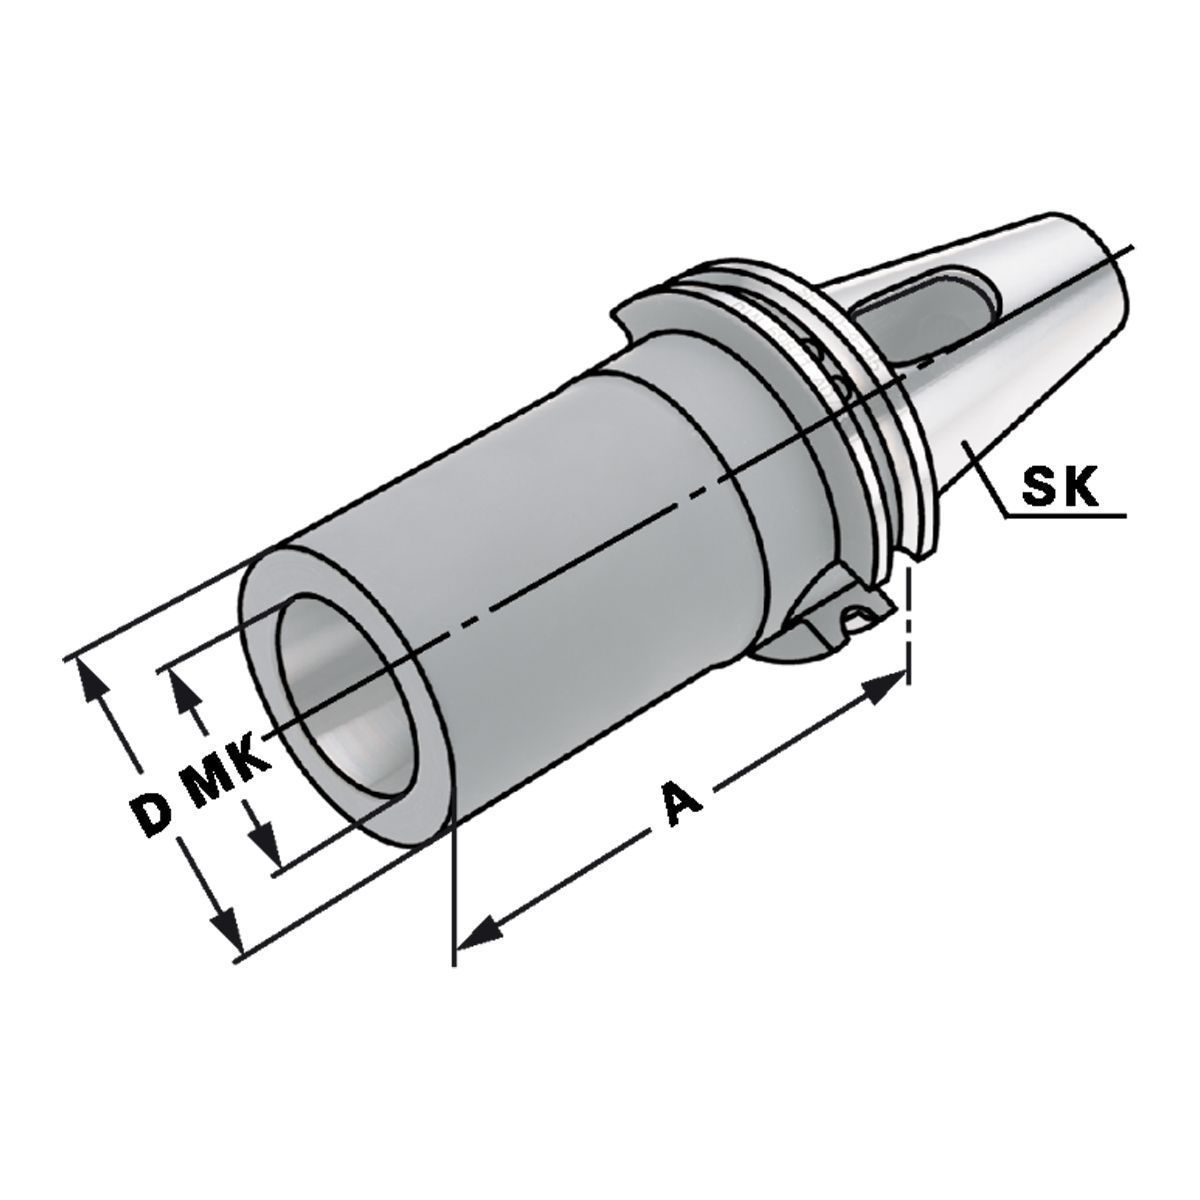 Zwischenhülse SK 50-1-45 für MK mit Austreiblappen DIN 6383